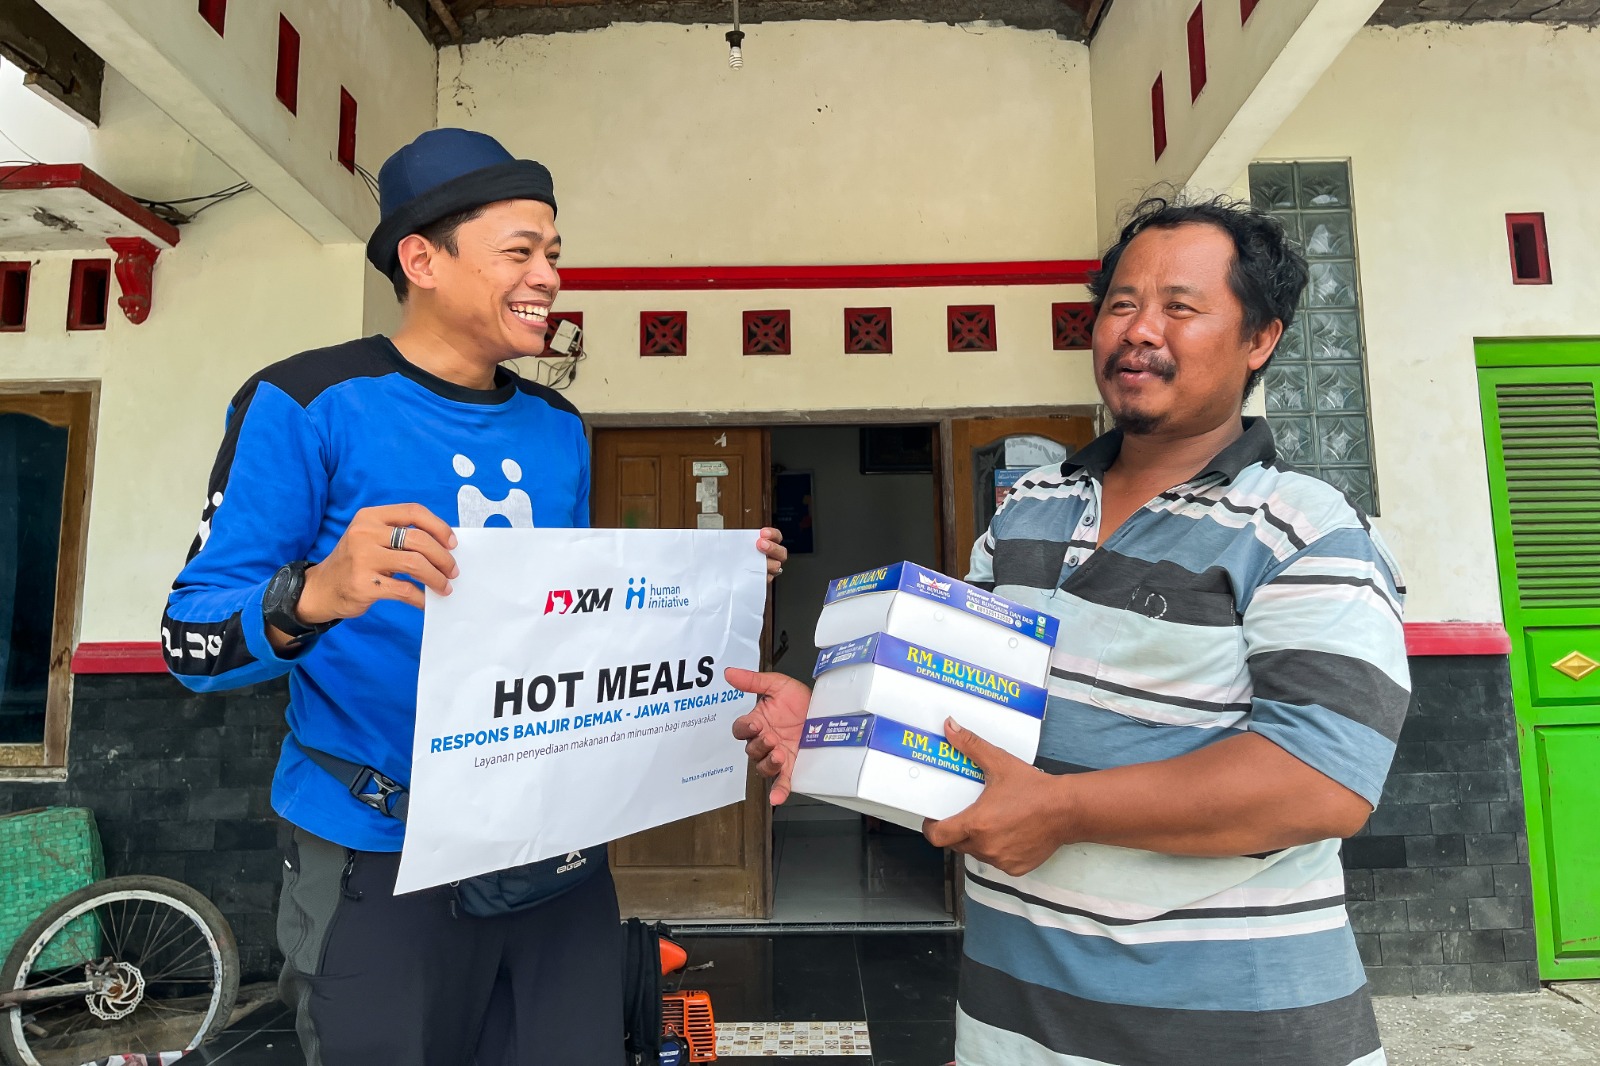 Kolaborasi Human Initiative dan XM Indonesia Salurkan Bantuan Melalui Program “Pos Dapur Air” untuk Pengungsi Banjir Demak